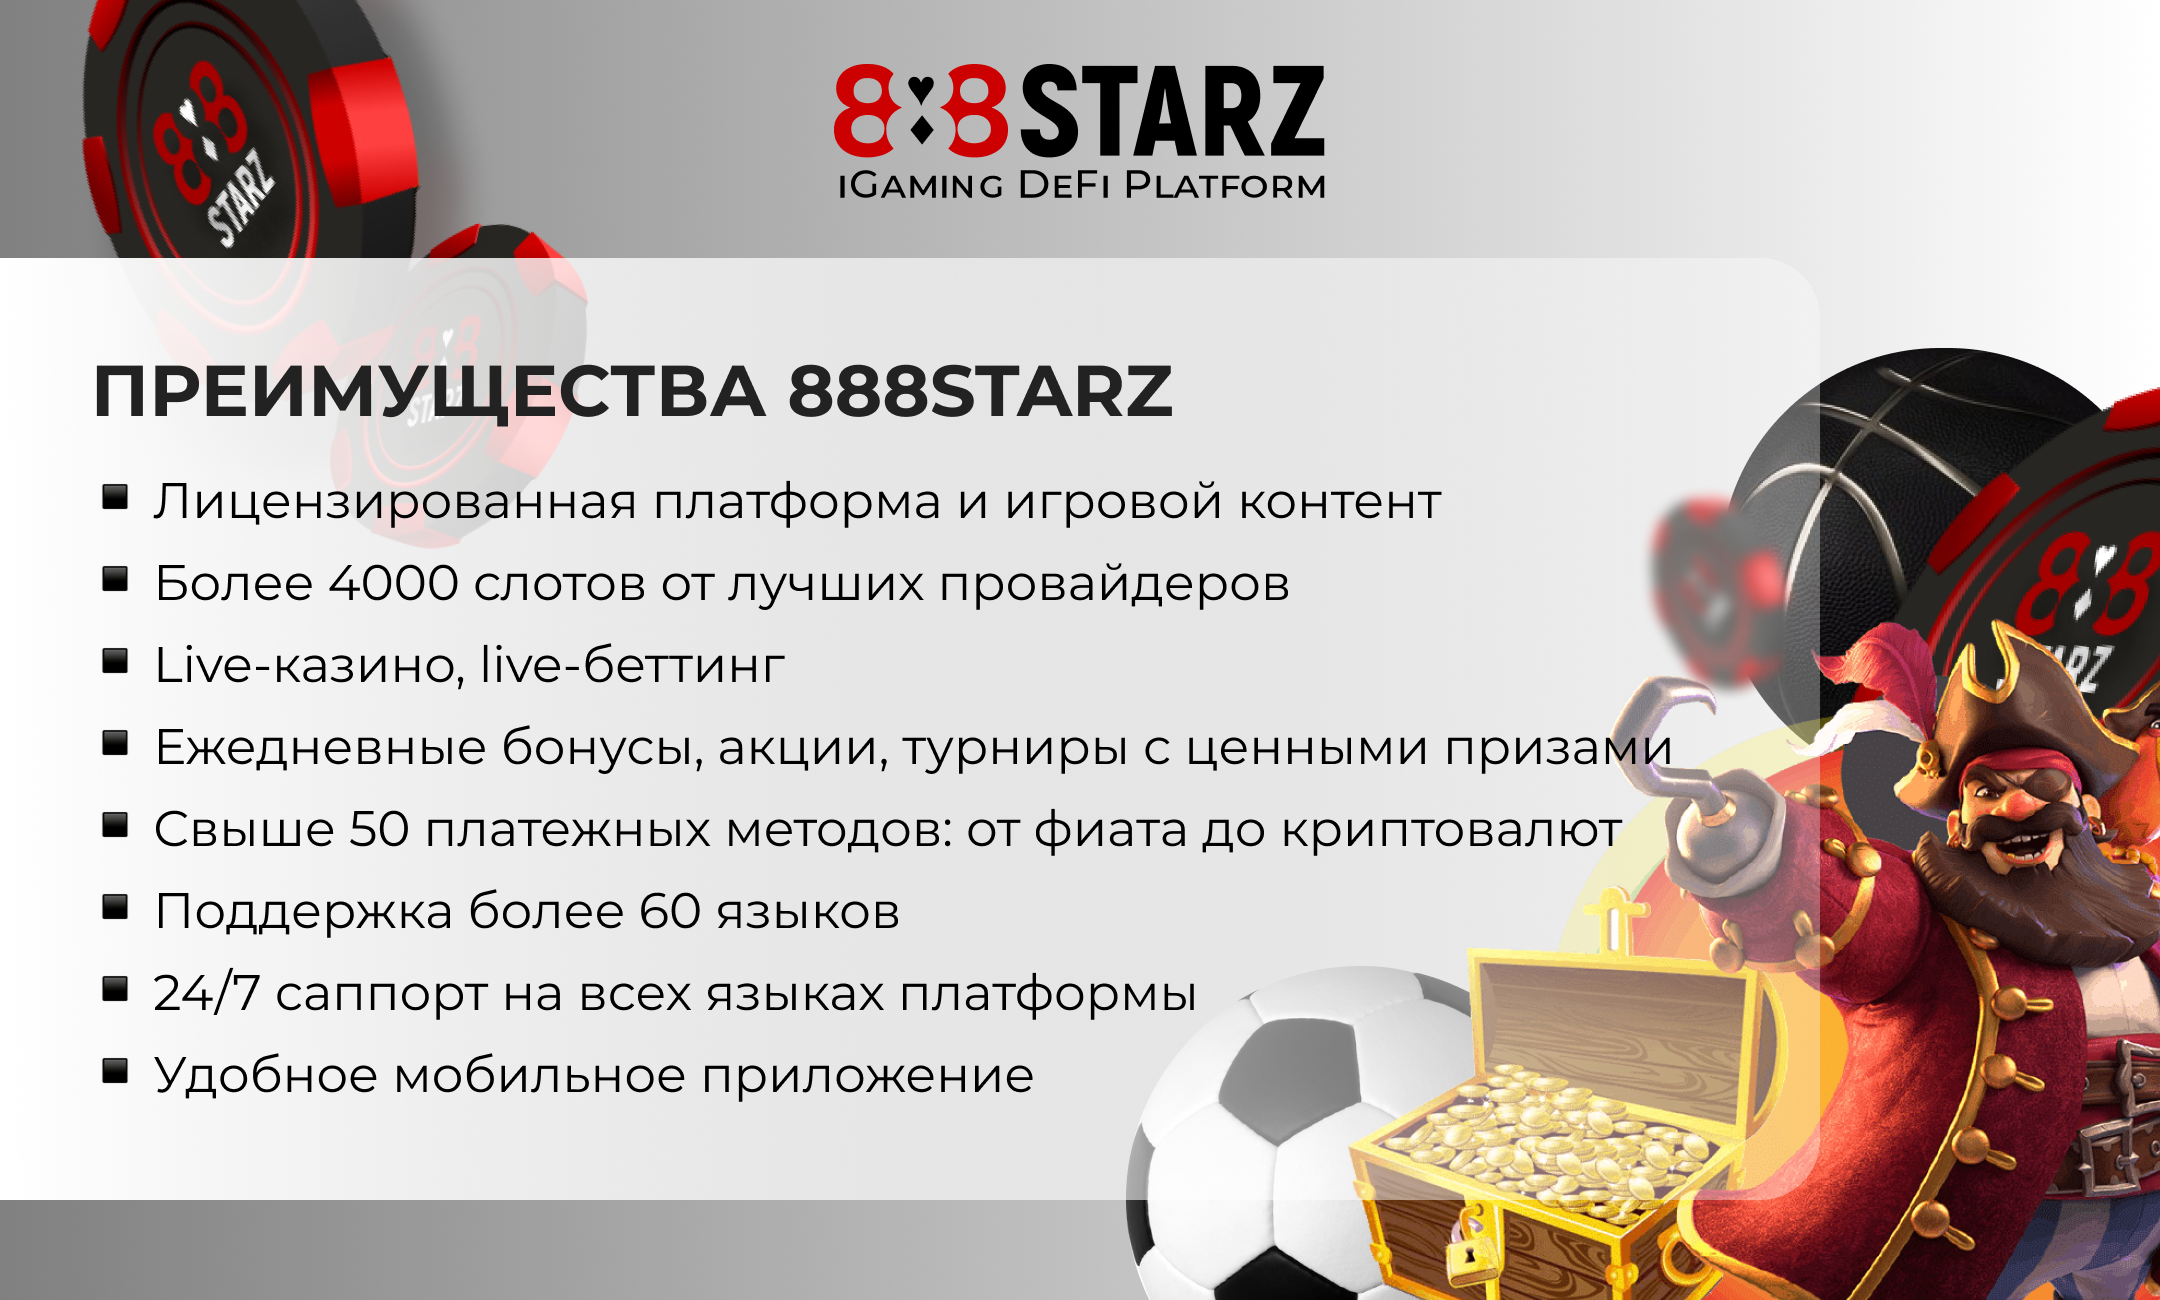 88starz 888 starz net. 888starz бонус пятница. 888starz. IGAMING. 888 Starz букмекер и казино.